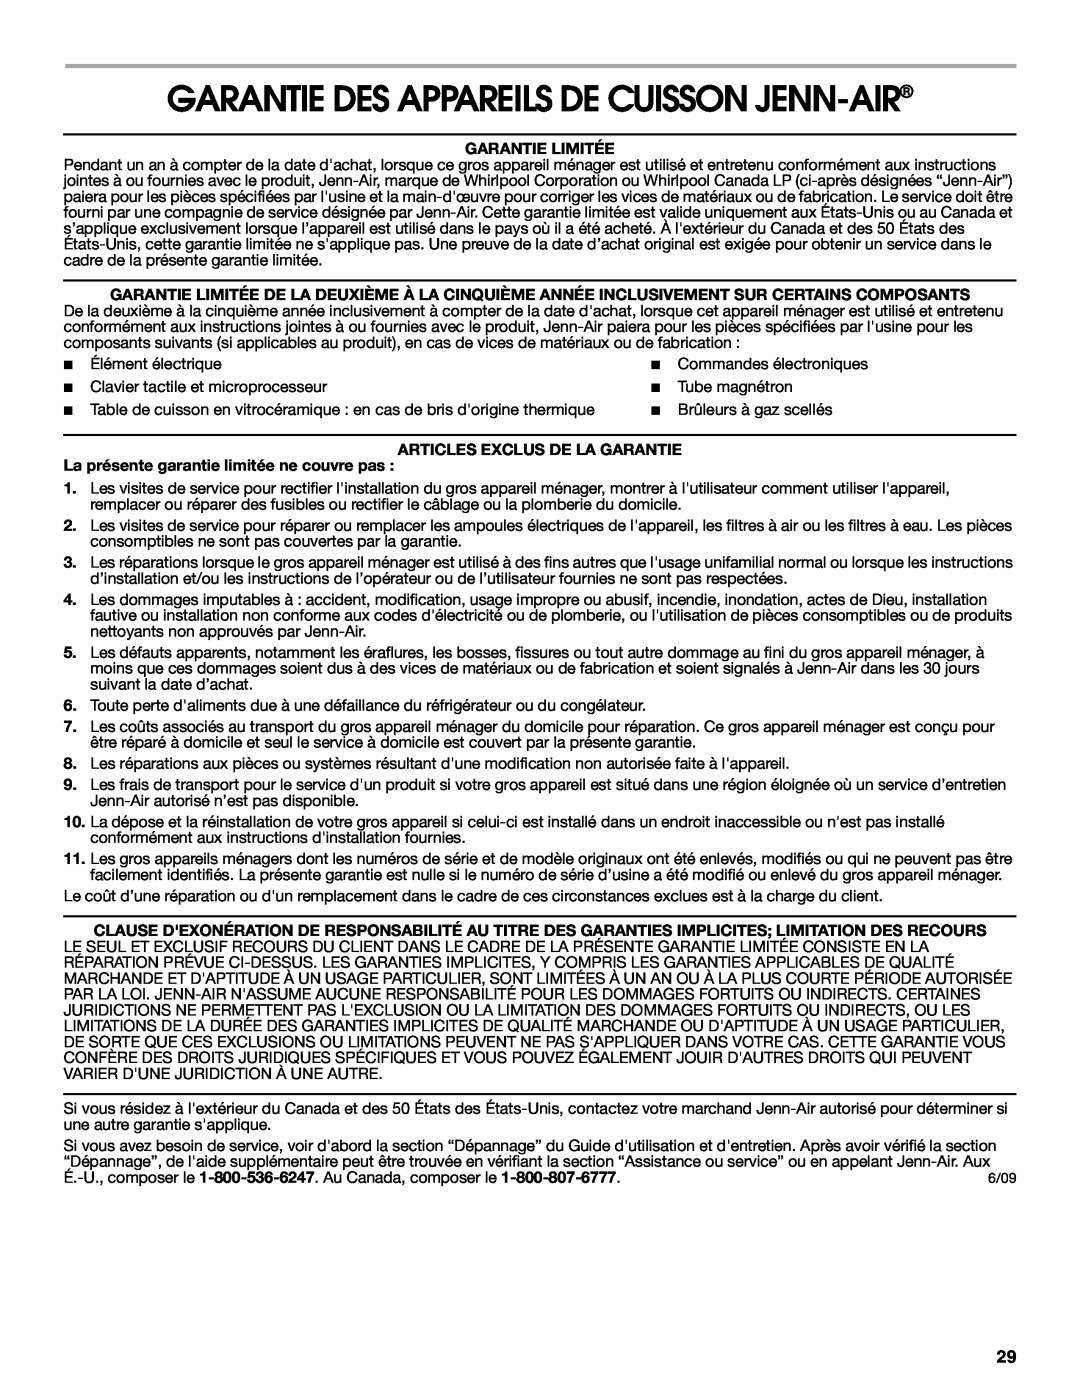 Jenn-Air W10197057B manual Garantie Des Appareils De Cuisson Jenn-Air, Garantie Limitée, Articles Exclus De La Garantie 